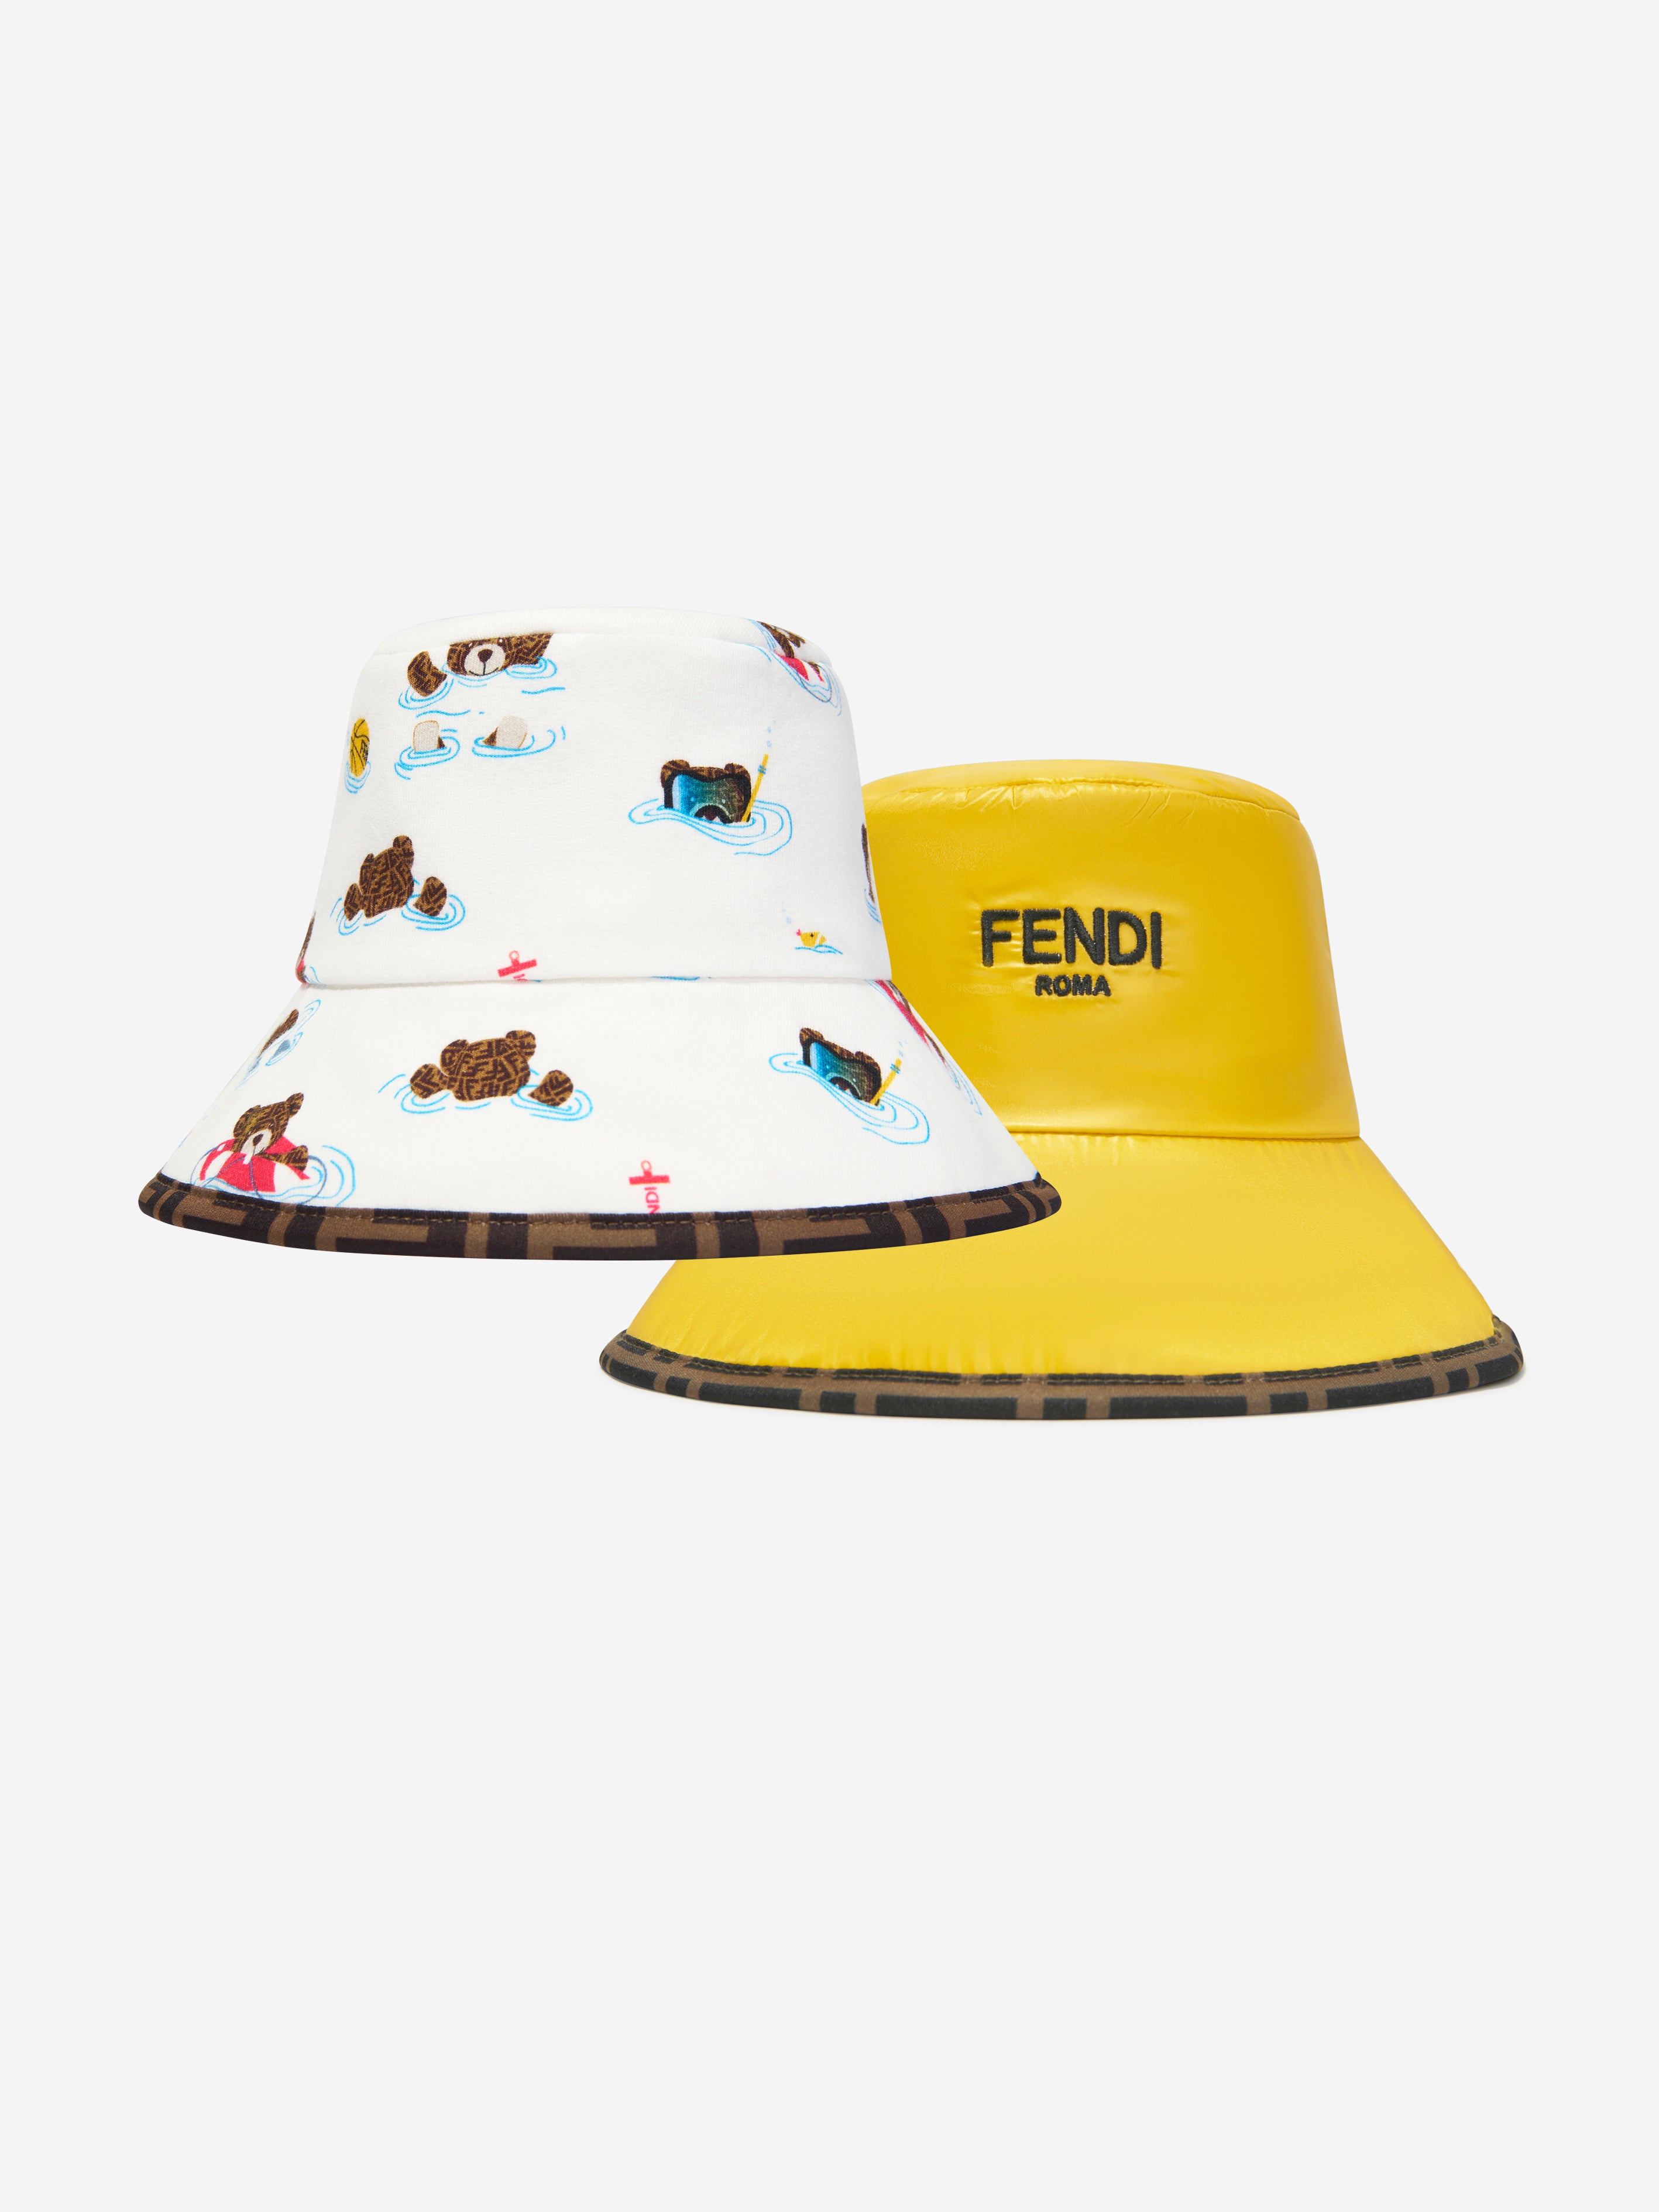 FENDI BUCKET HAT  Hats, Fendi bucket, Fendi